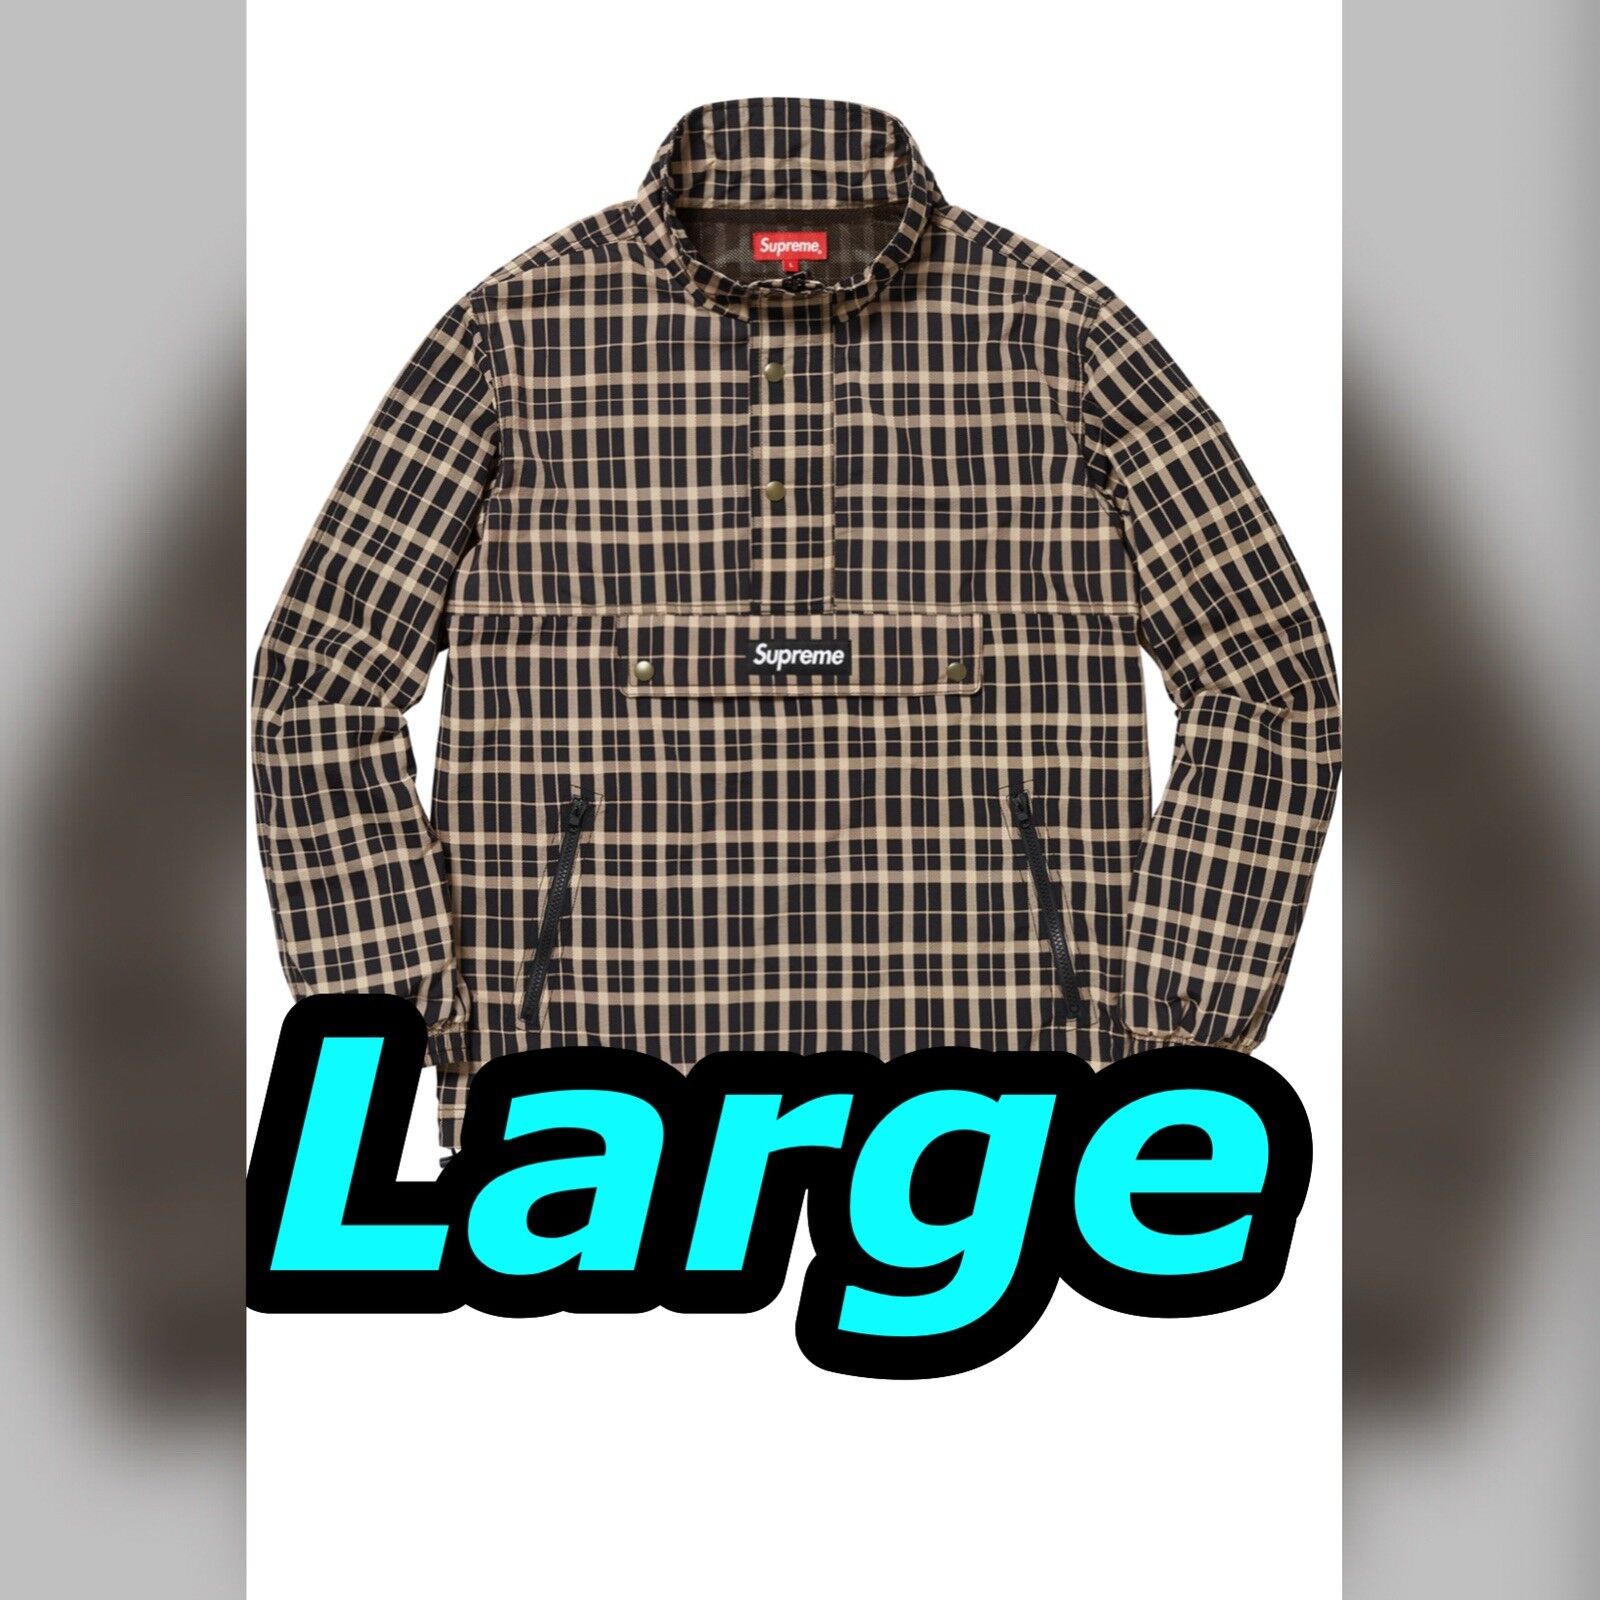 Supreme Nylon Plaid Pullover Tan Large Jacket Box logo